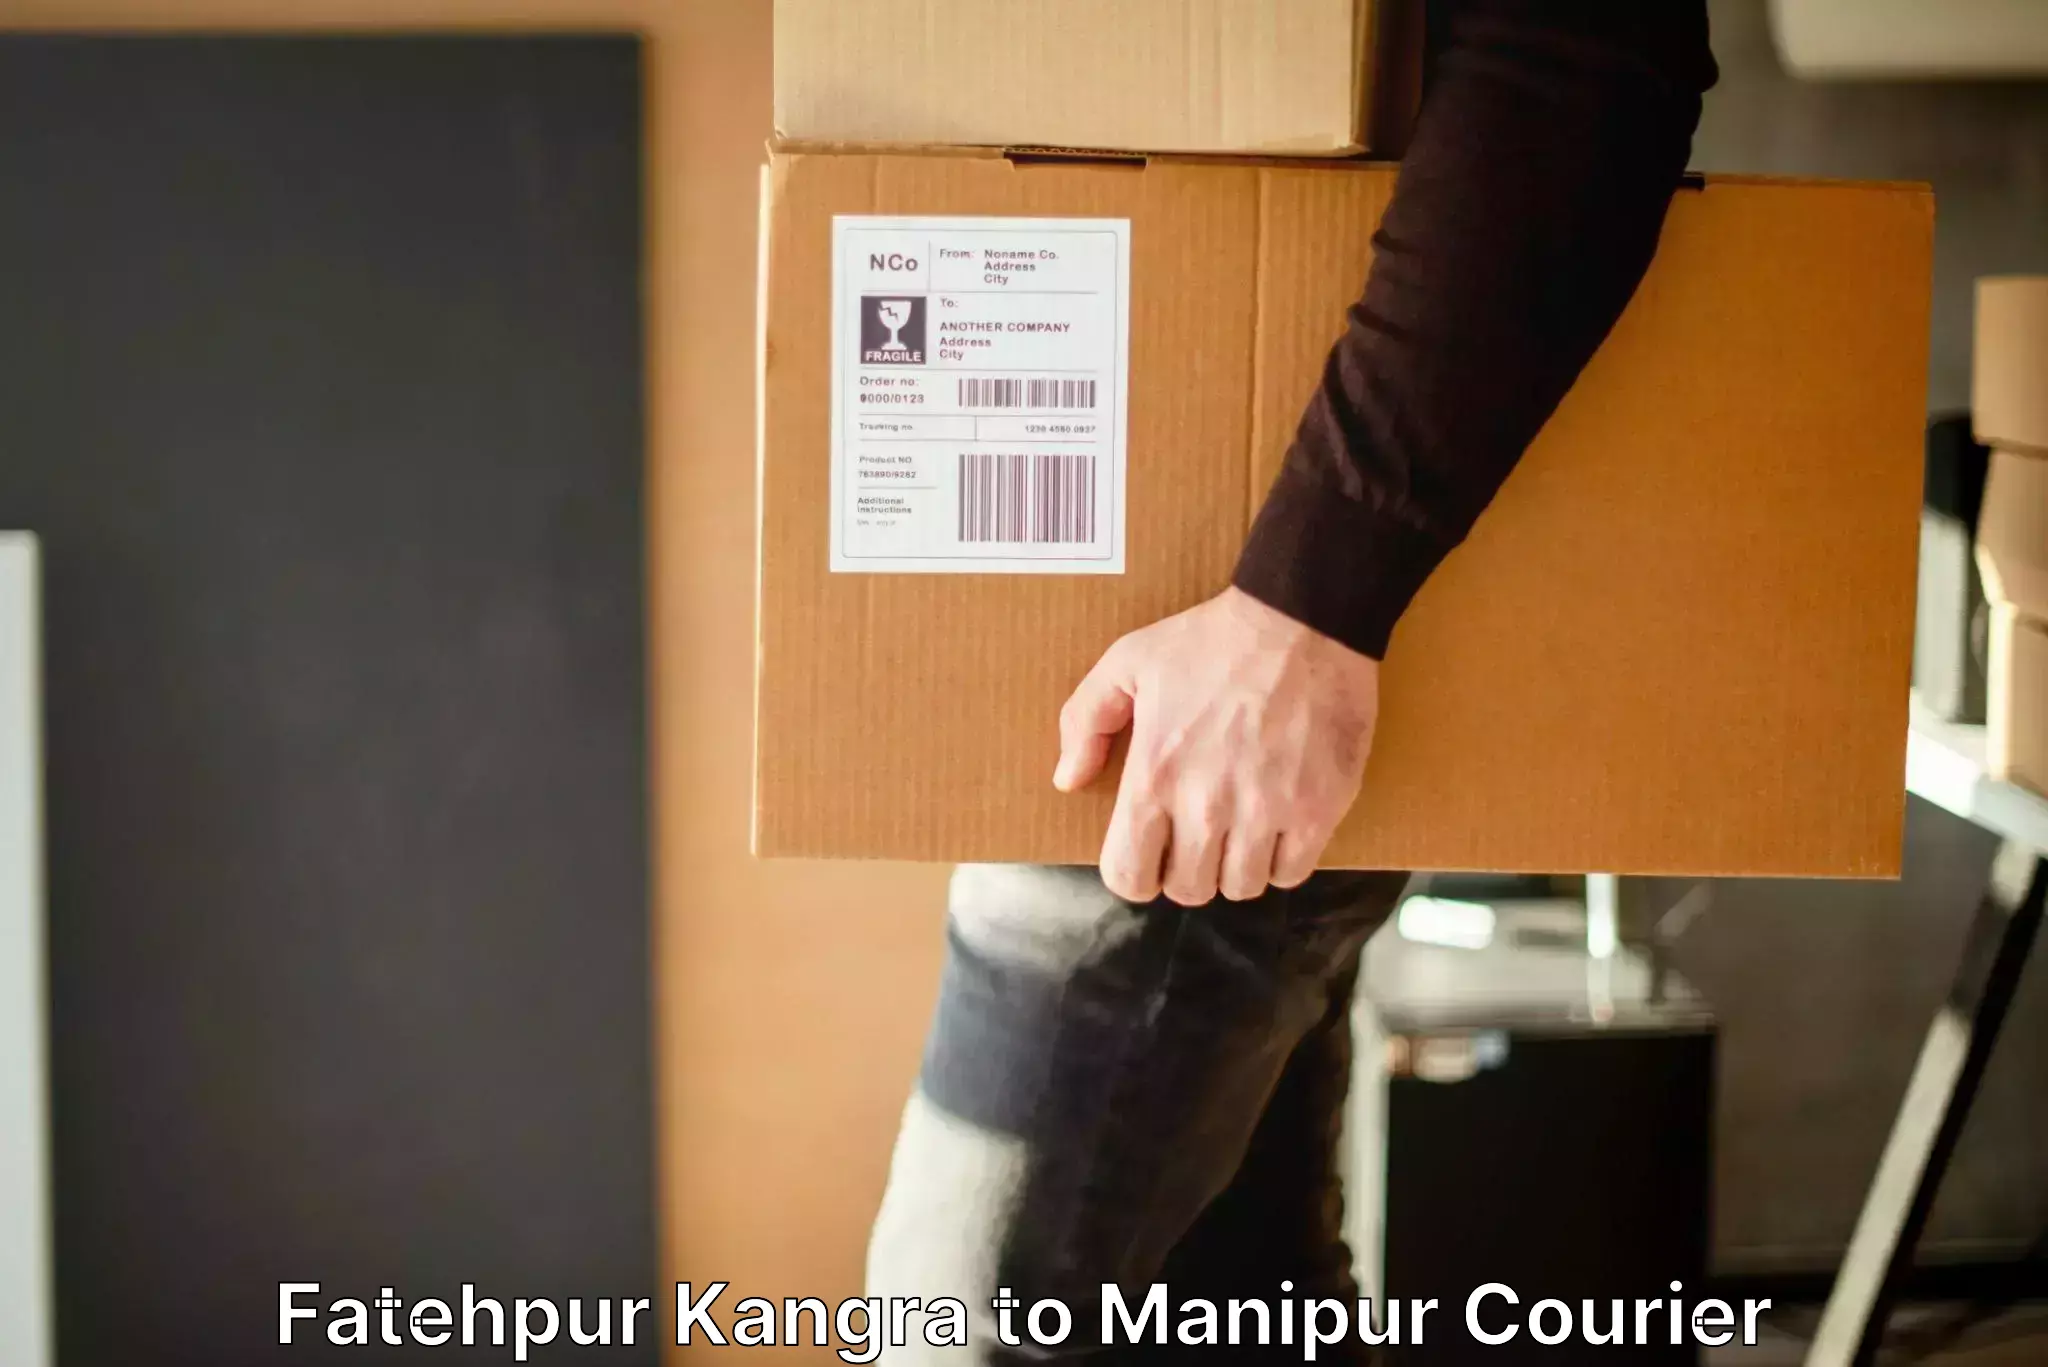 Baggage transport scheduler Fatehpur Kangra to NIT Manipur